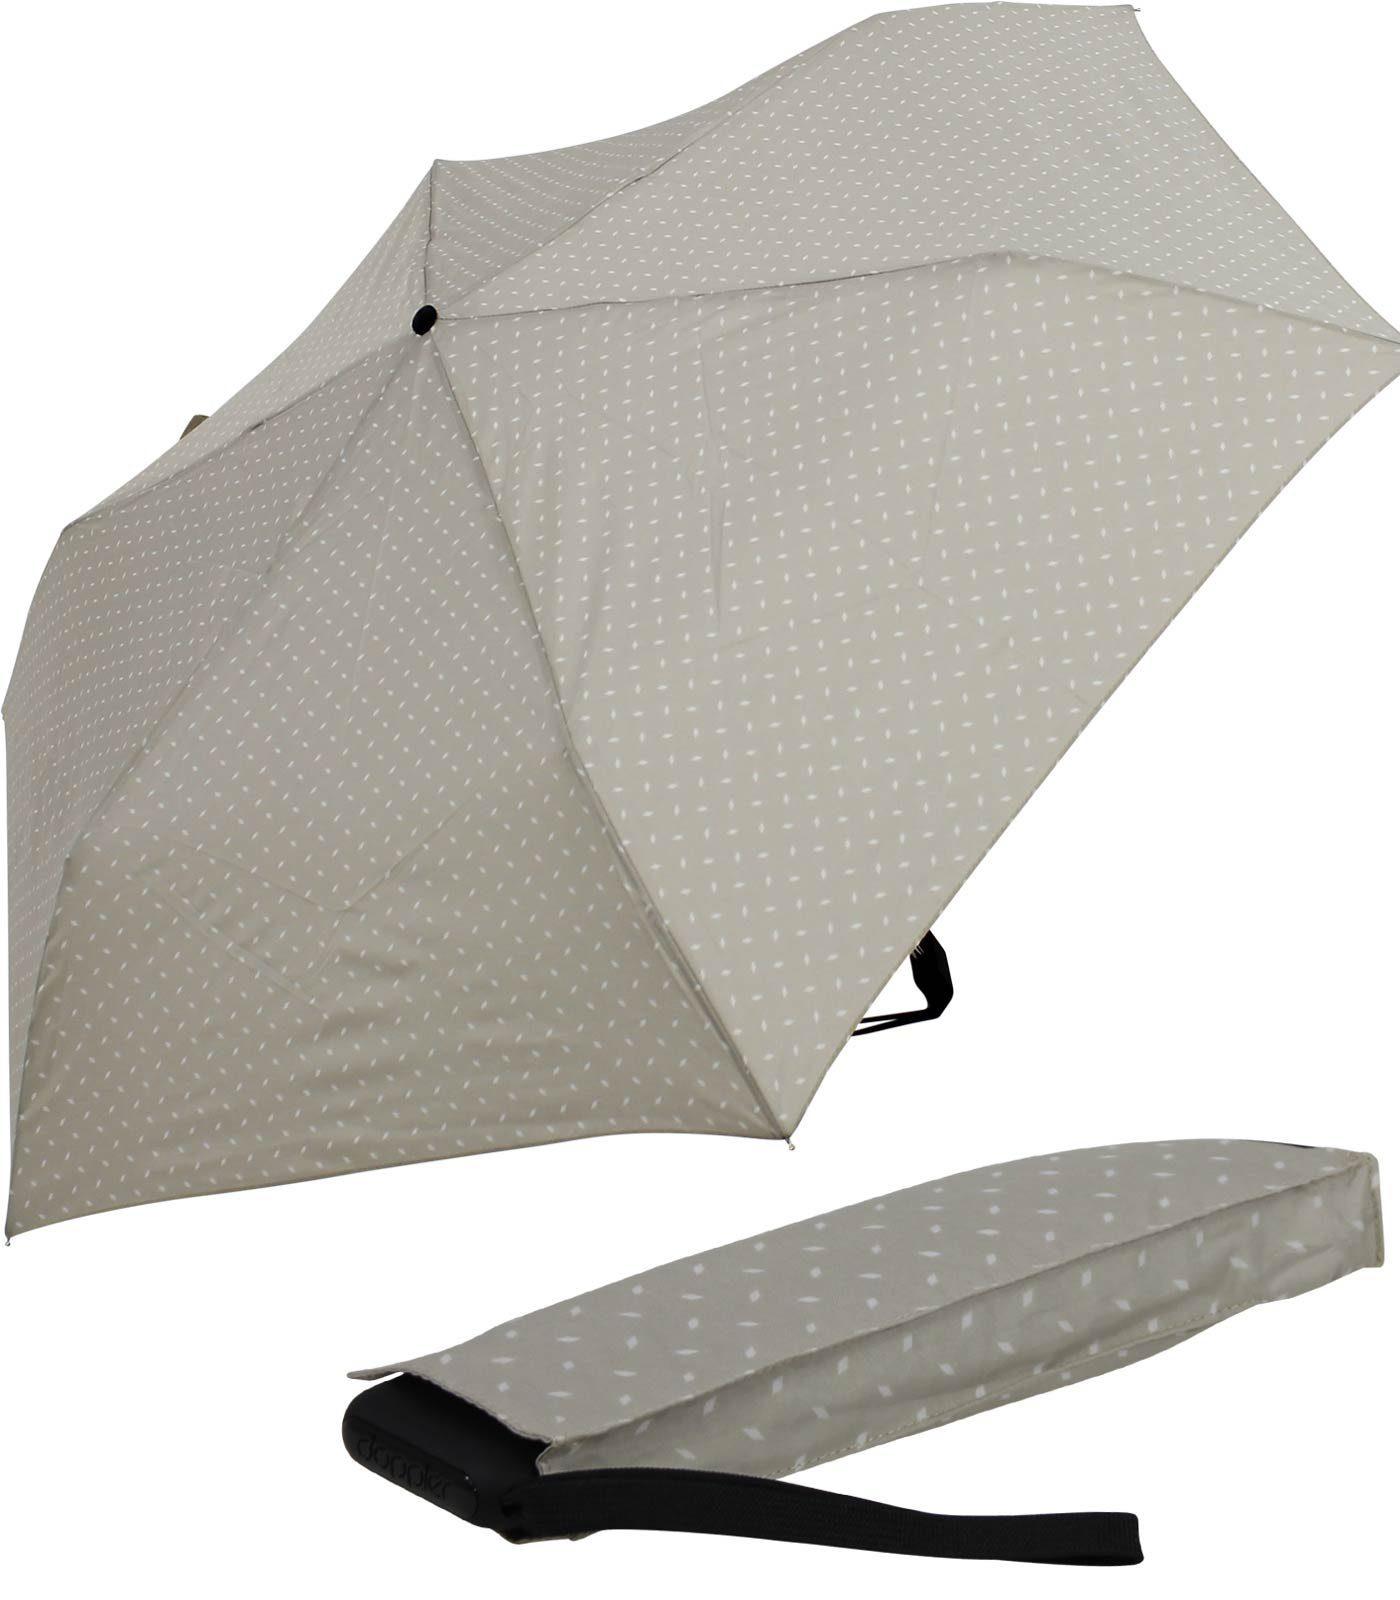 doppler® Taschenregenschirm ein leichter und flacher Schirm für jede Tasche, dieser treue Begleiter findet überall Platz grau